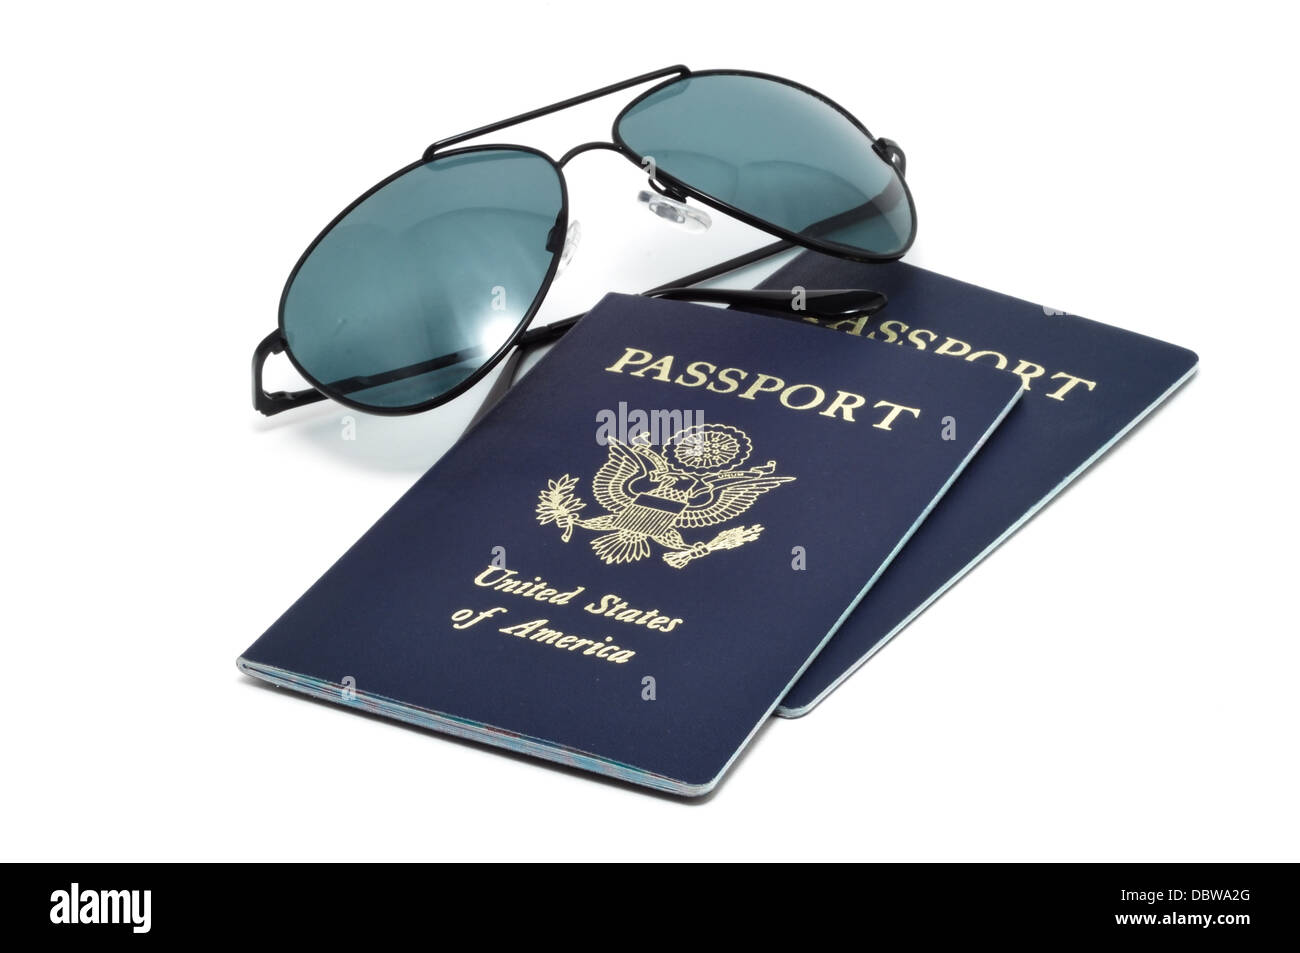 Zwei Vereinigte Staaten Pässe und Sonnenbrillen - Ferien / Urlaub Konzept Stockfoto